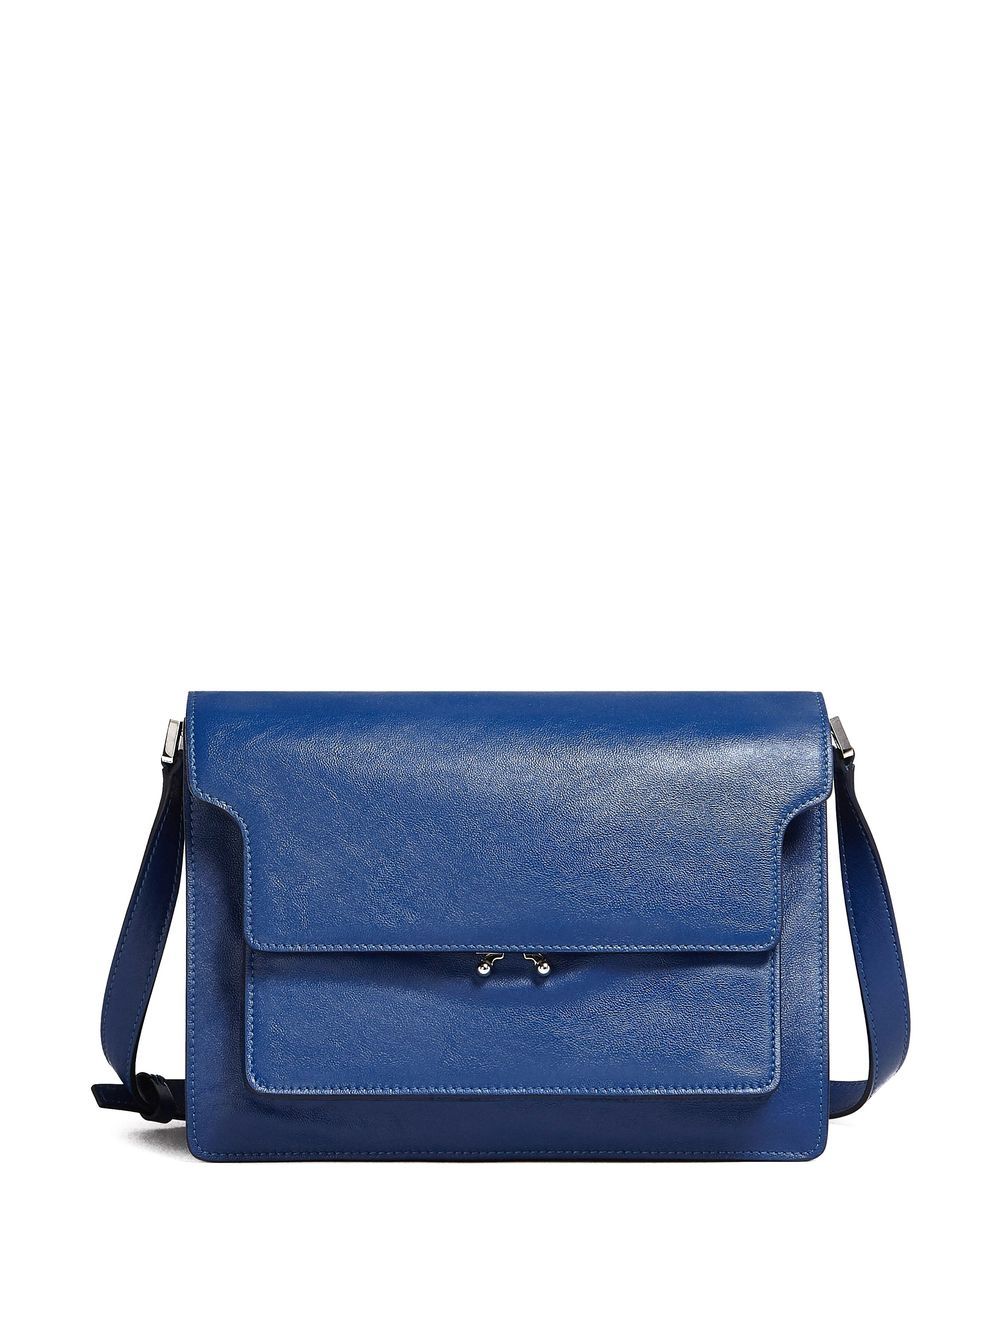 Marni Trunk leather shoulder bag - Blue von Marni